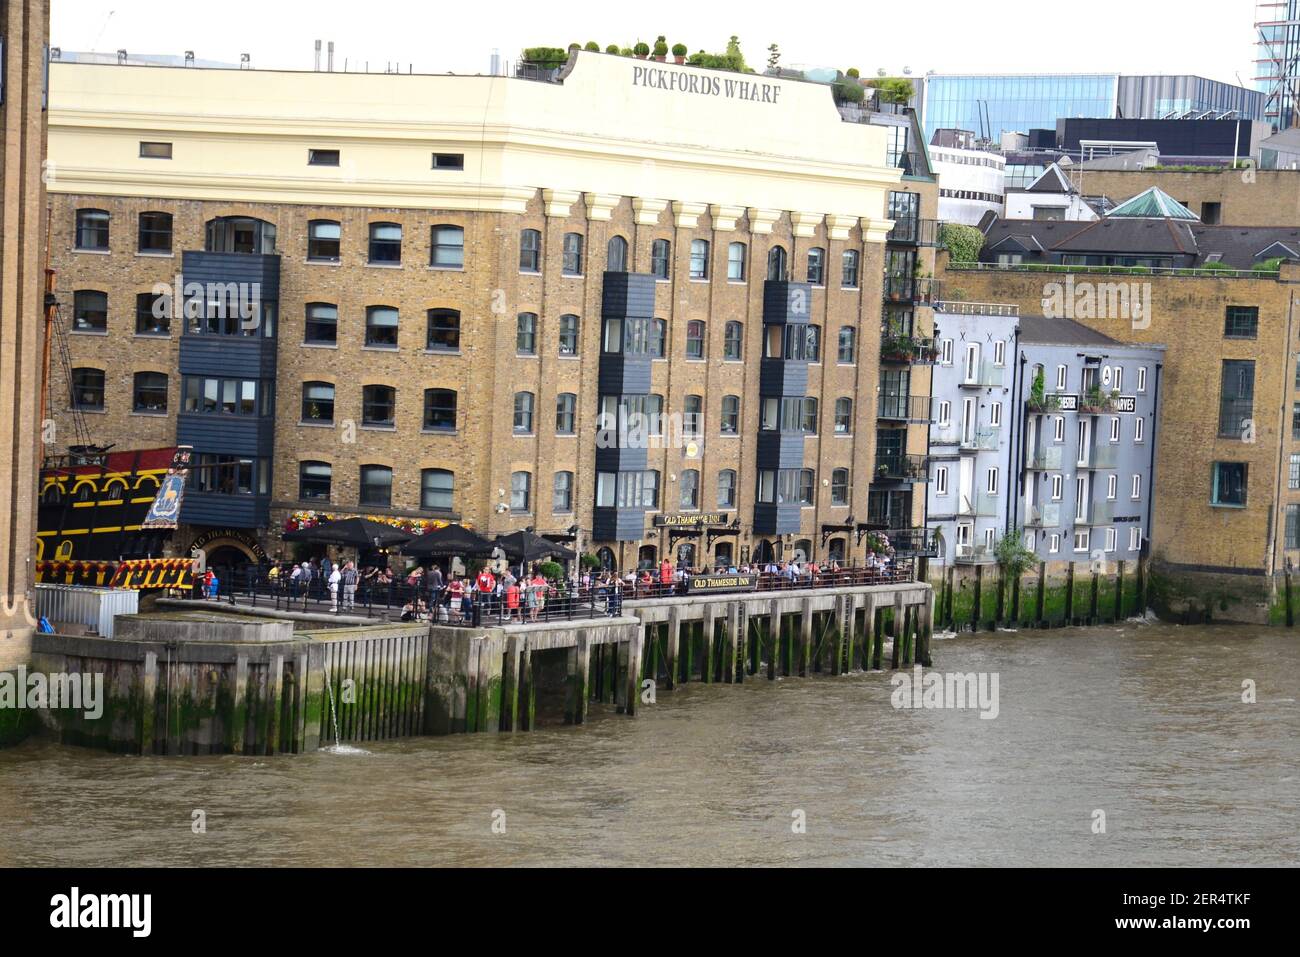 People chatting outside The Thameside Inn, Southwark, London Stock Photo